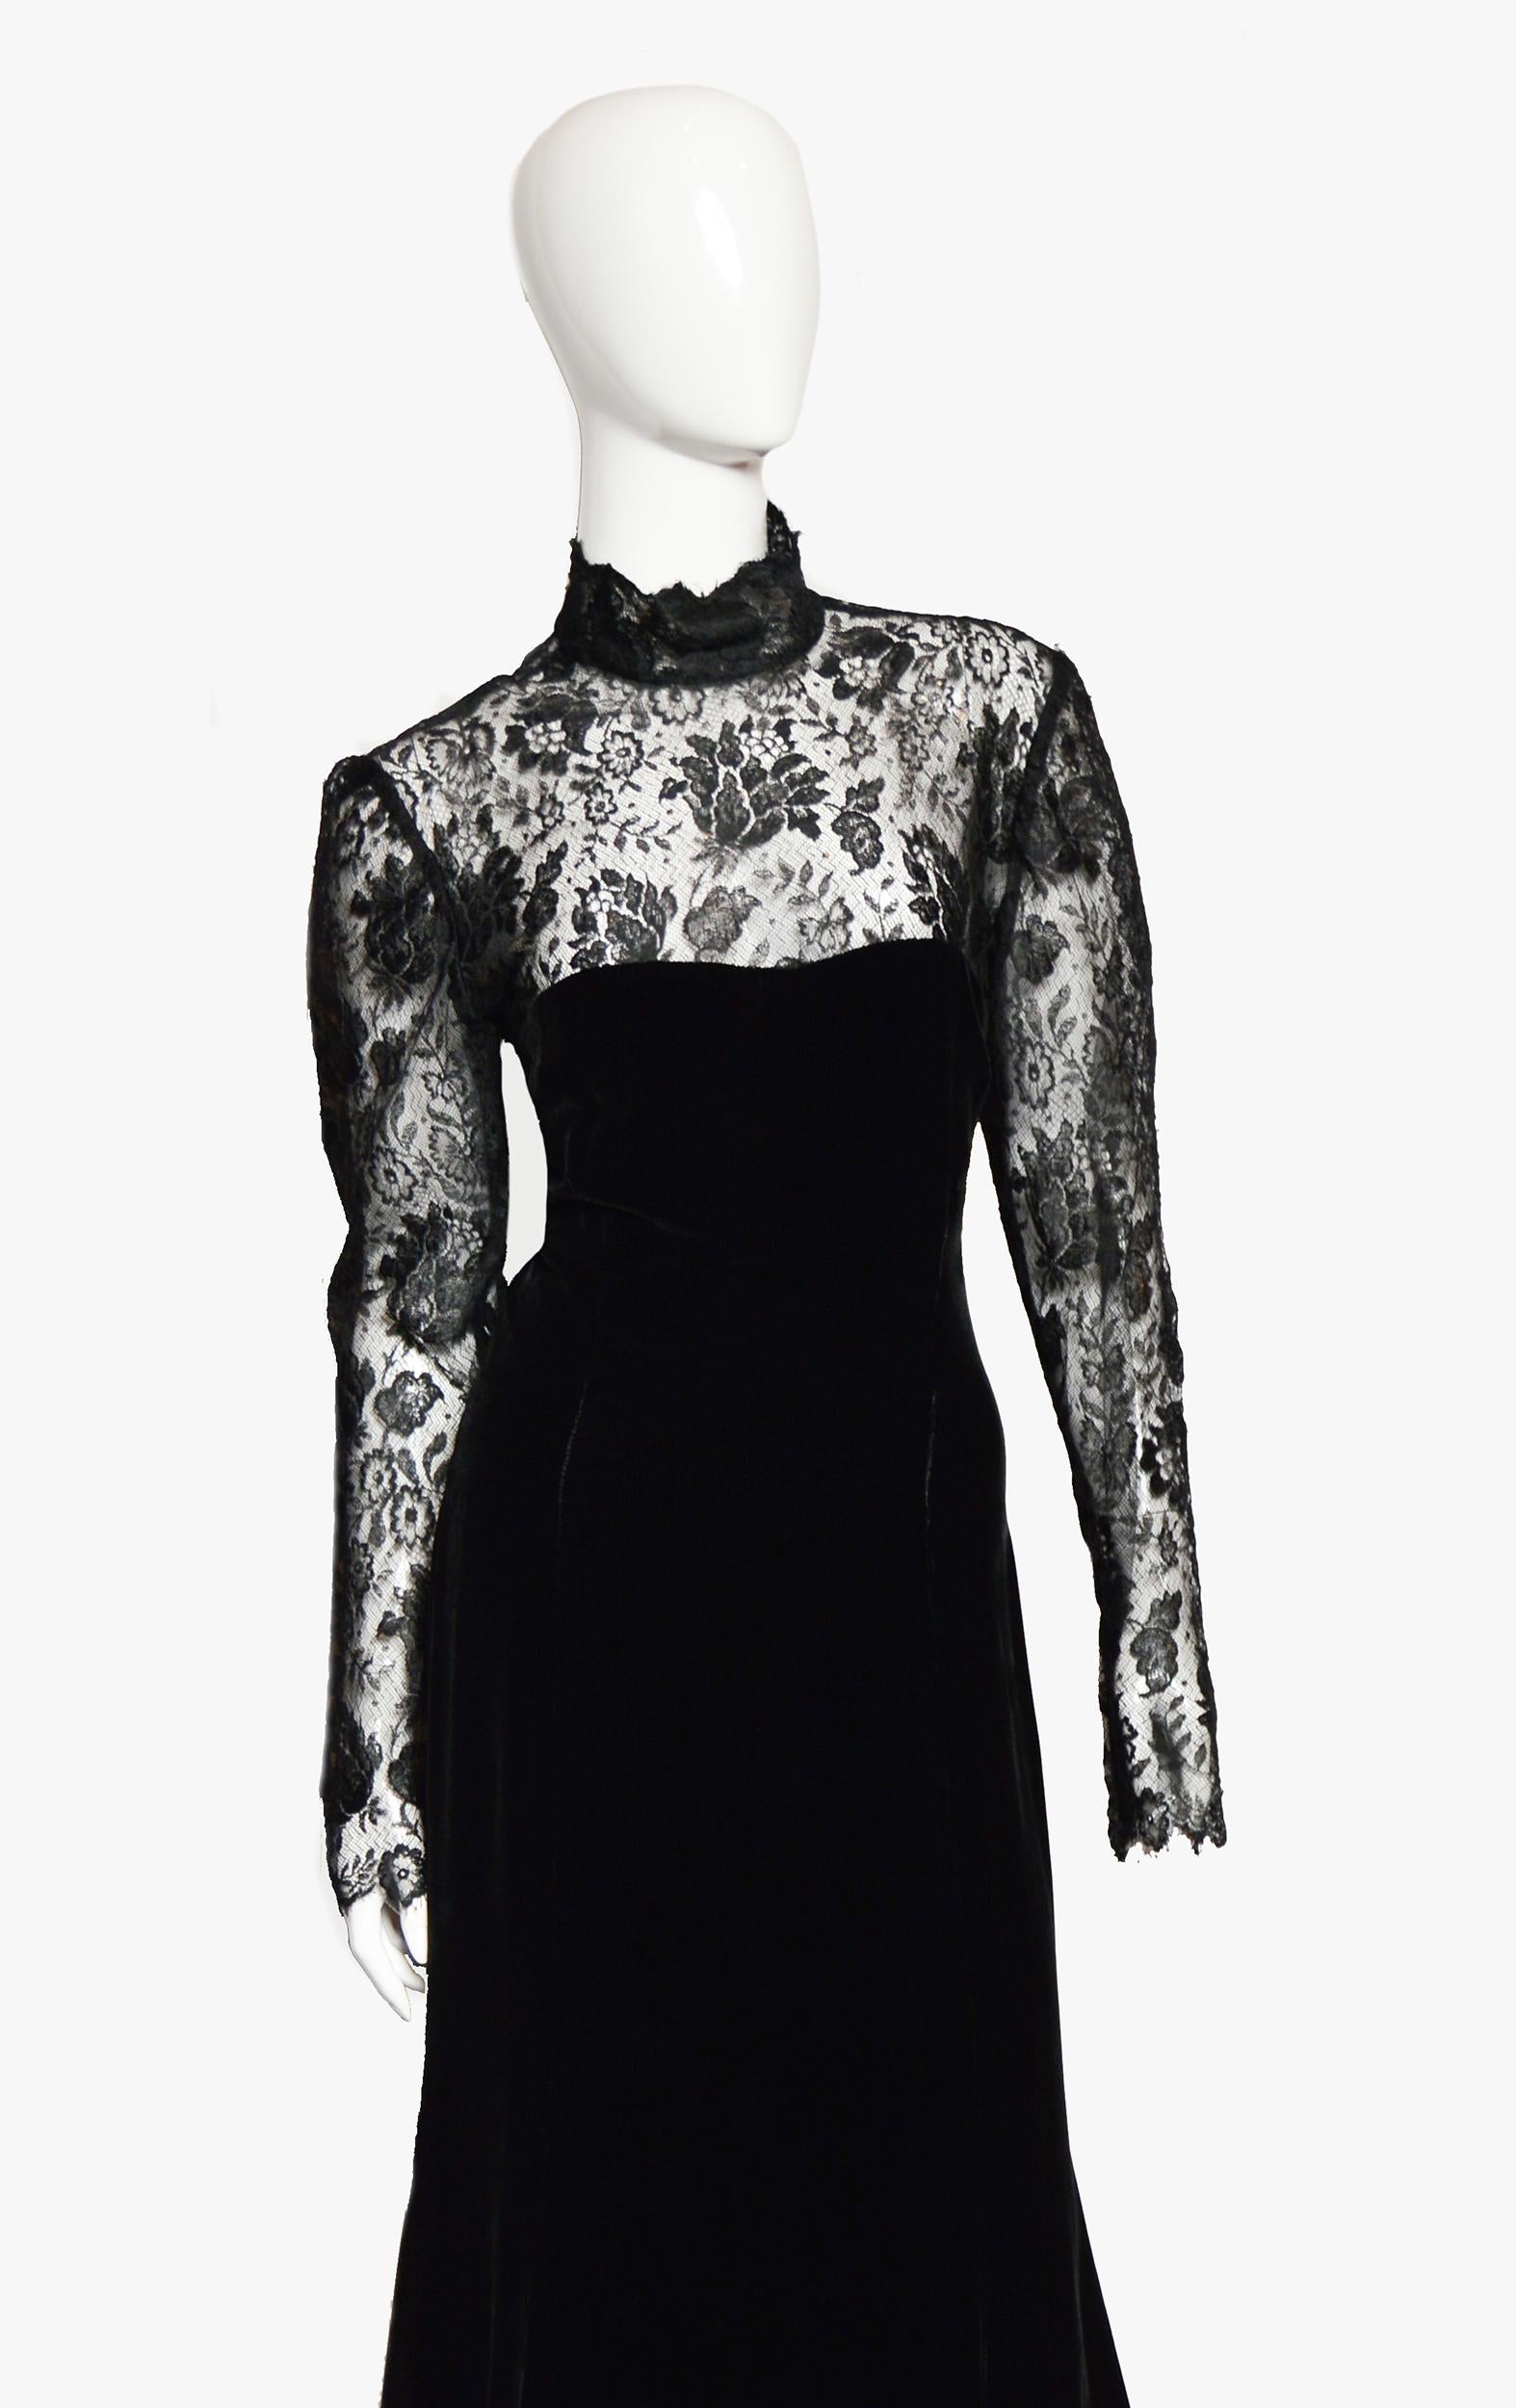 Magnifique robe de soirée vintage Ungaro. Créé dans les années 80.

Veuillez noter que l'étiquette de la marque est manquante. L'étiquette indique qu'il s'agit de soie, mais elle ressemble à de la guipure et à du velours.

Informations